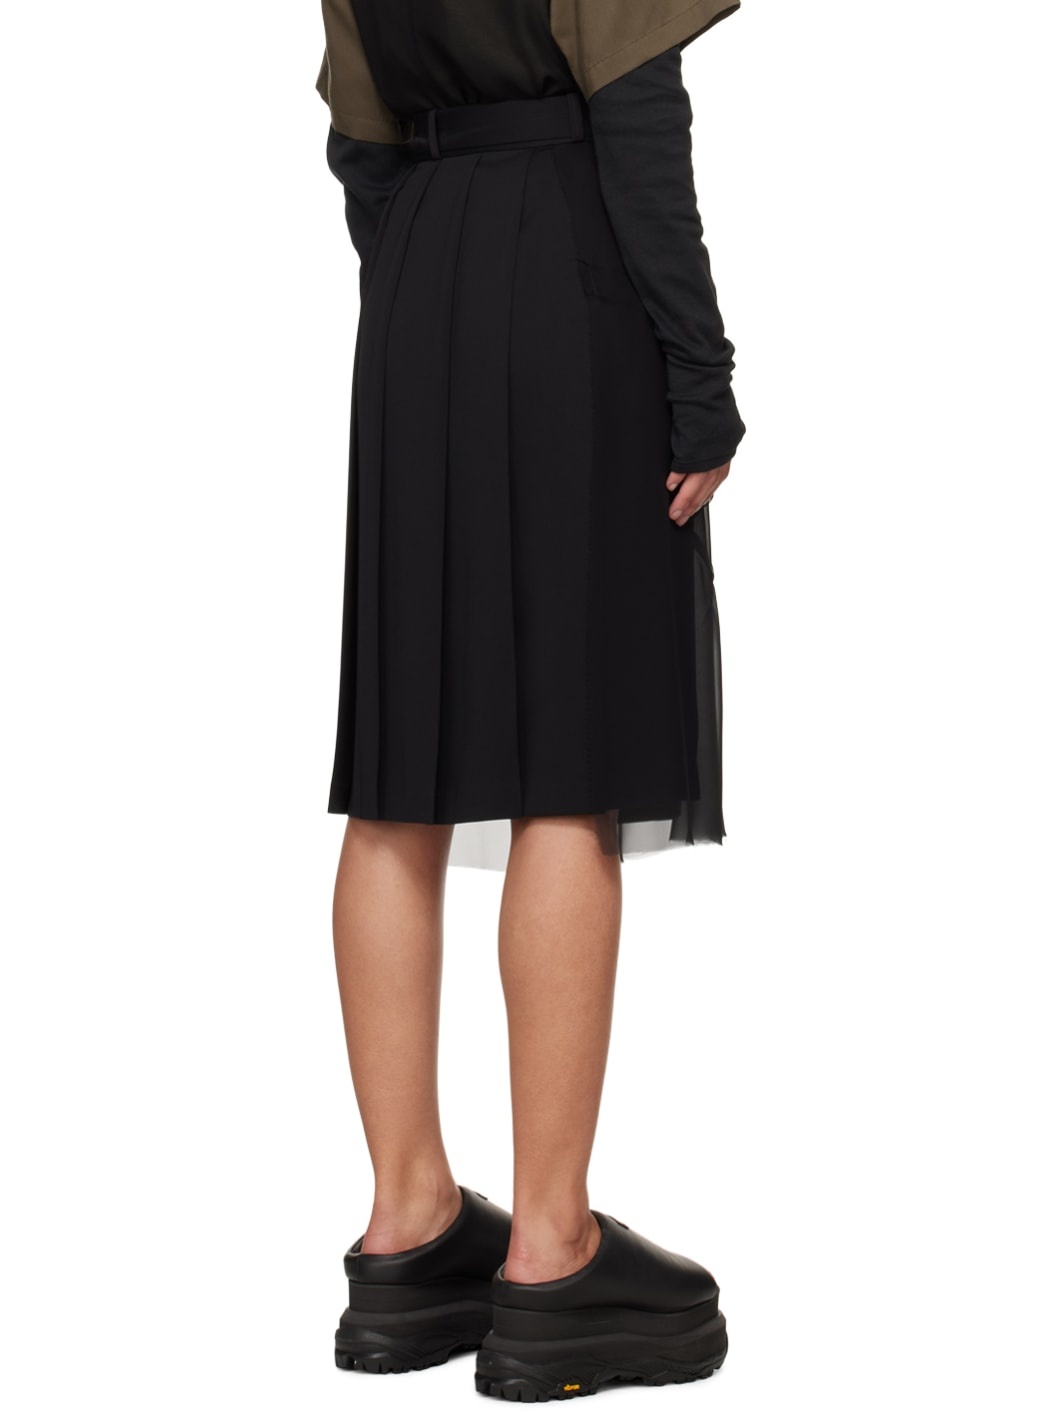 Black Layered Midi Skirt - 3